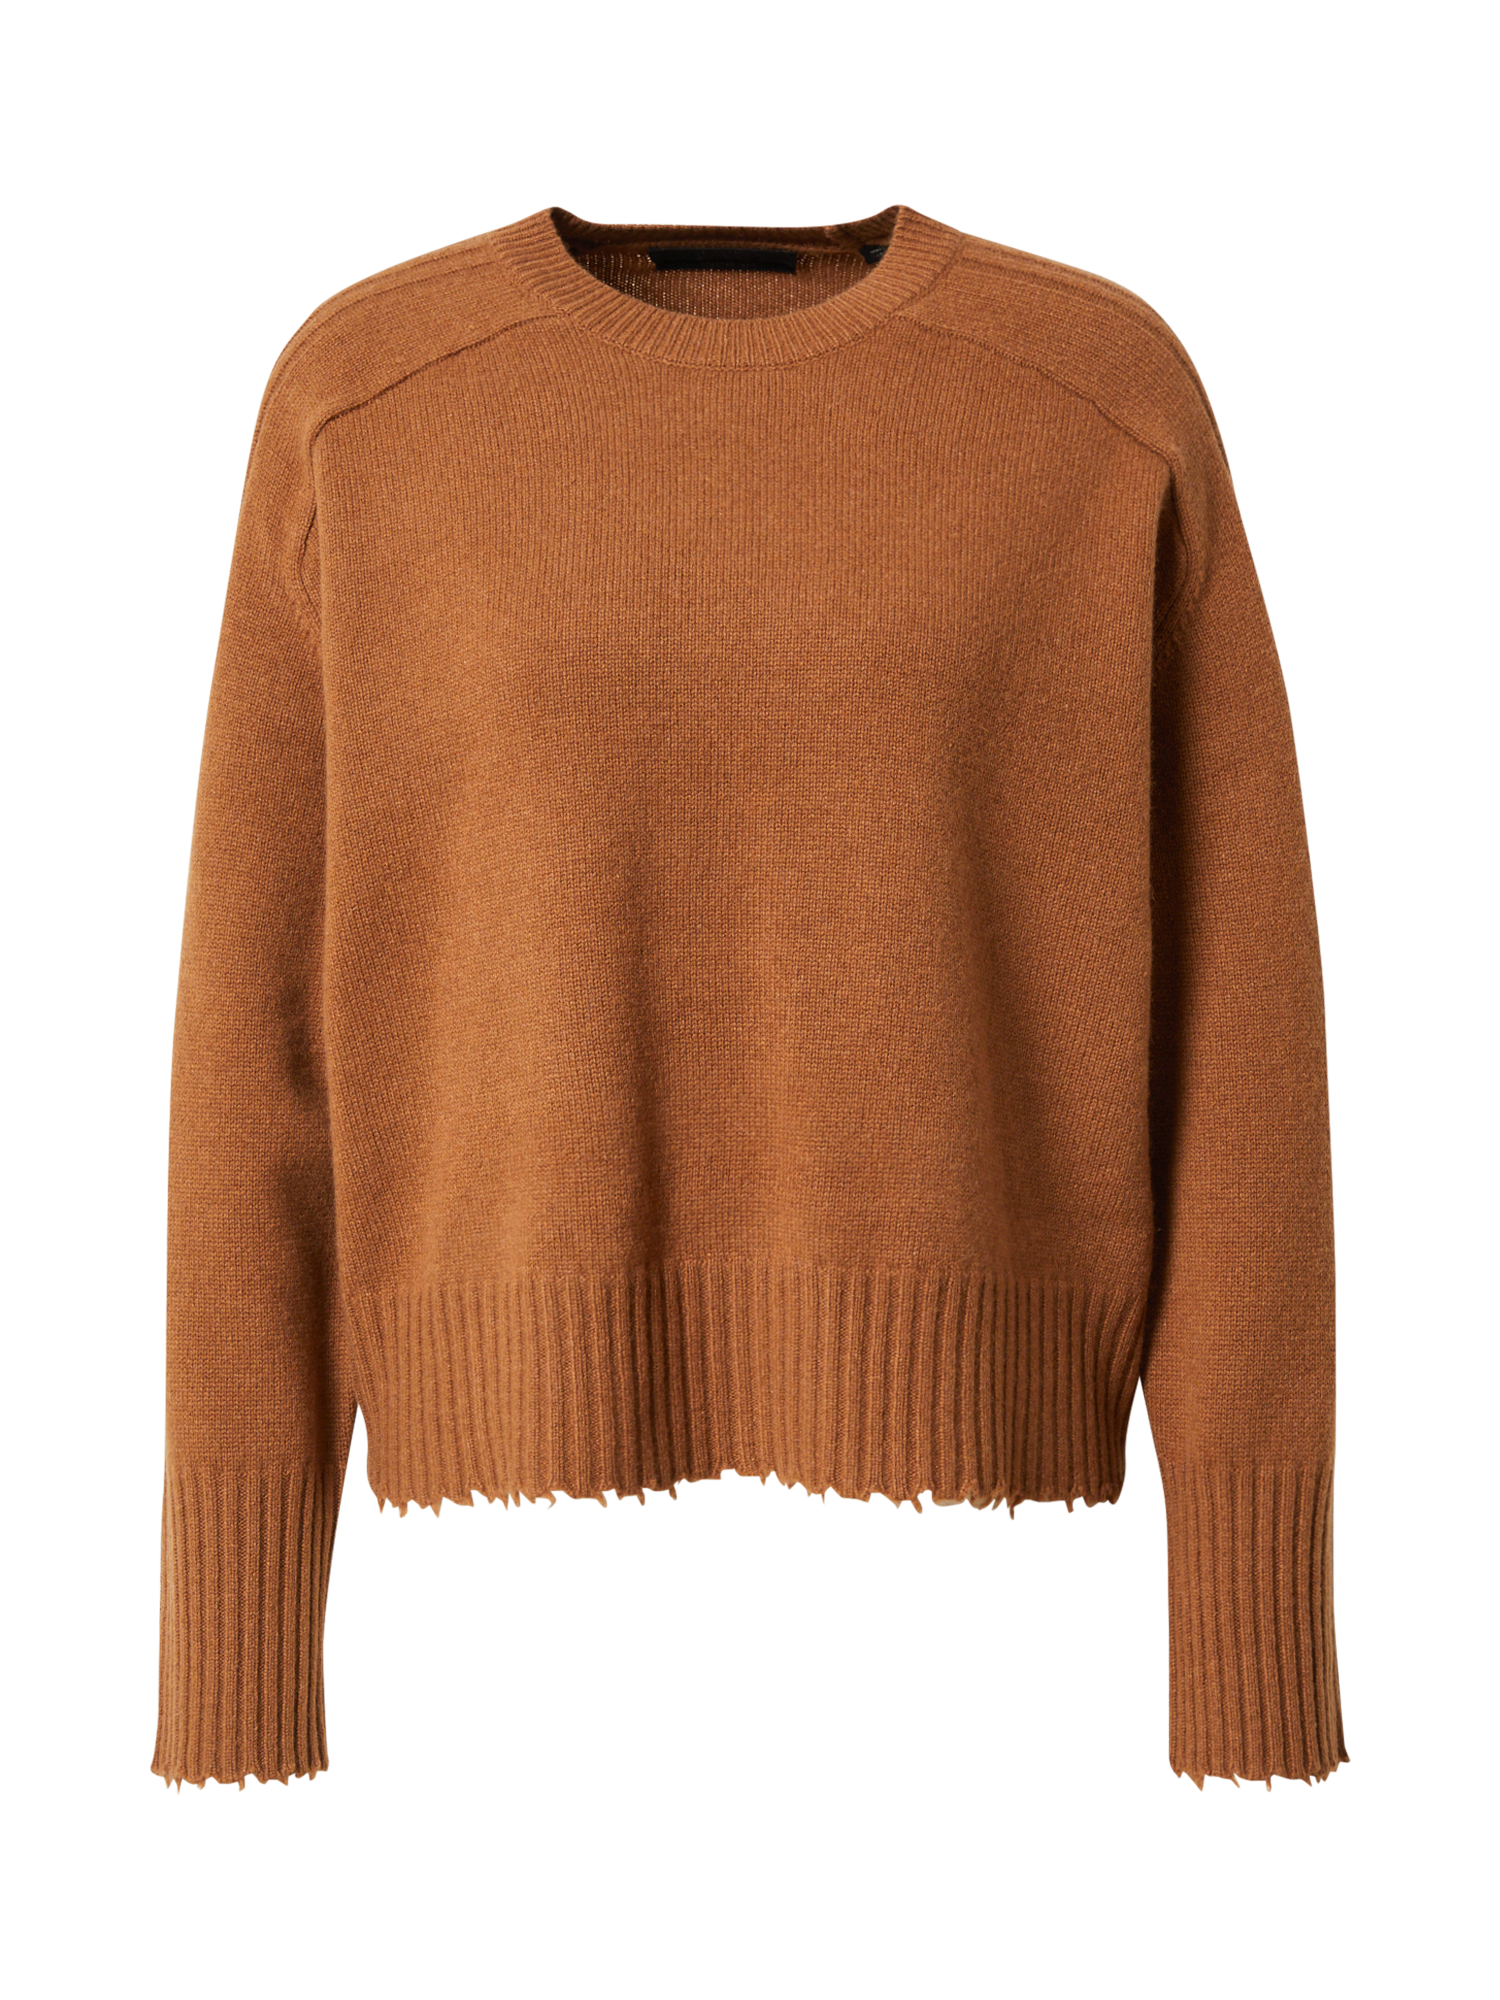 Swetry & dzianina Kobiety AllSaints Sweter Kiera w kolorze Brązowym 